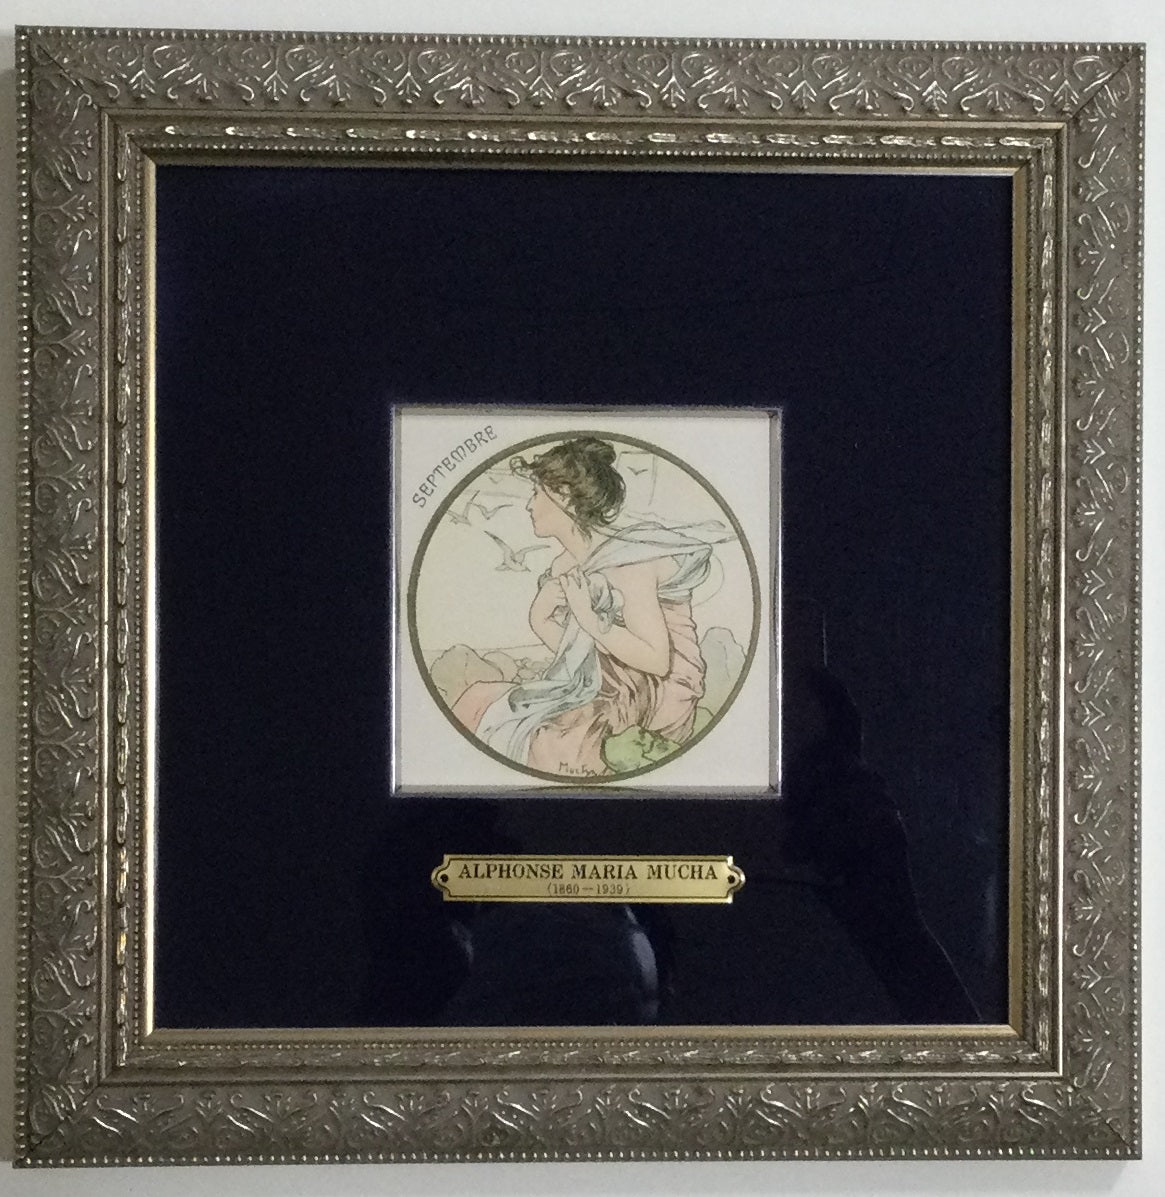 ミュシャ 絵画 9月 リトグラフ 版画 1900年制作 – 芸術百貨店